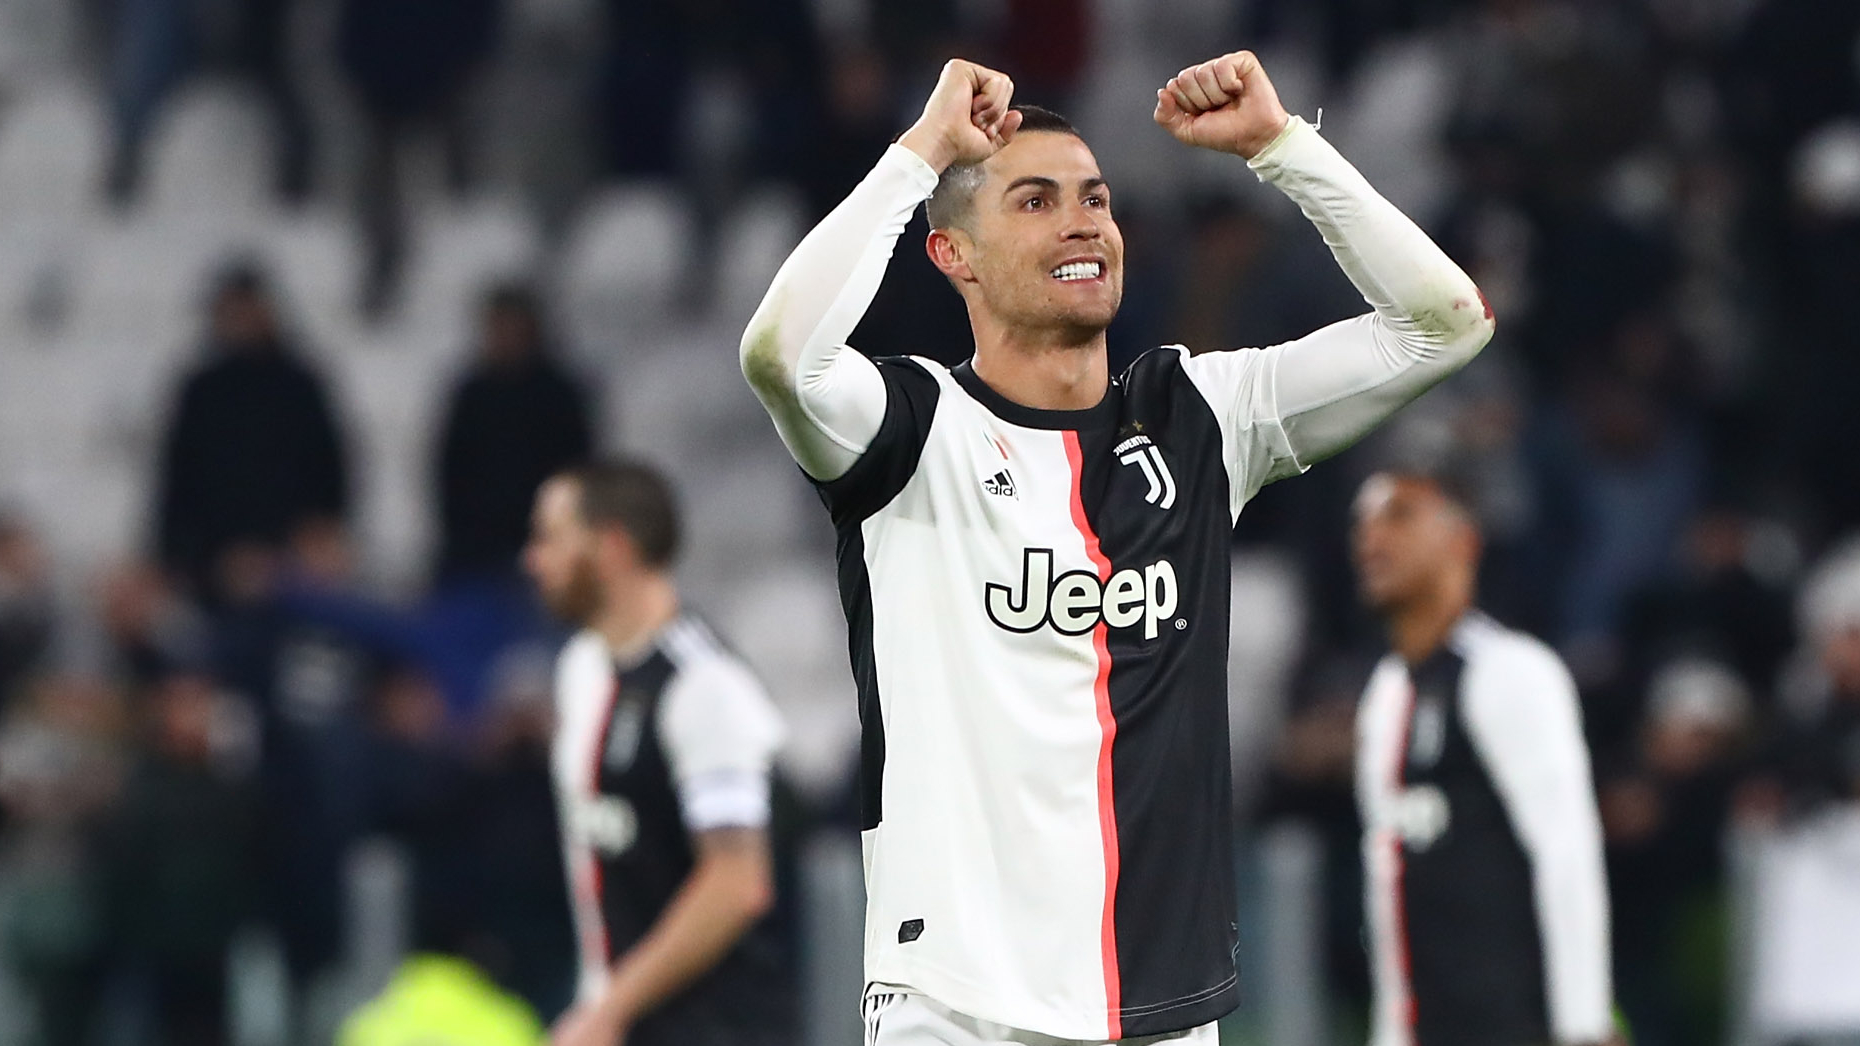 Un doublé et des records, la réaction de Cristiano Ronaldo après sa folle soirée